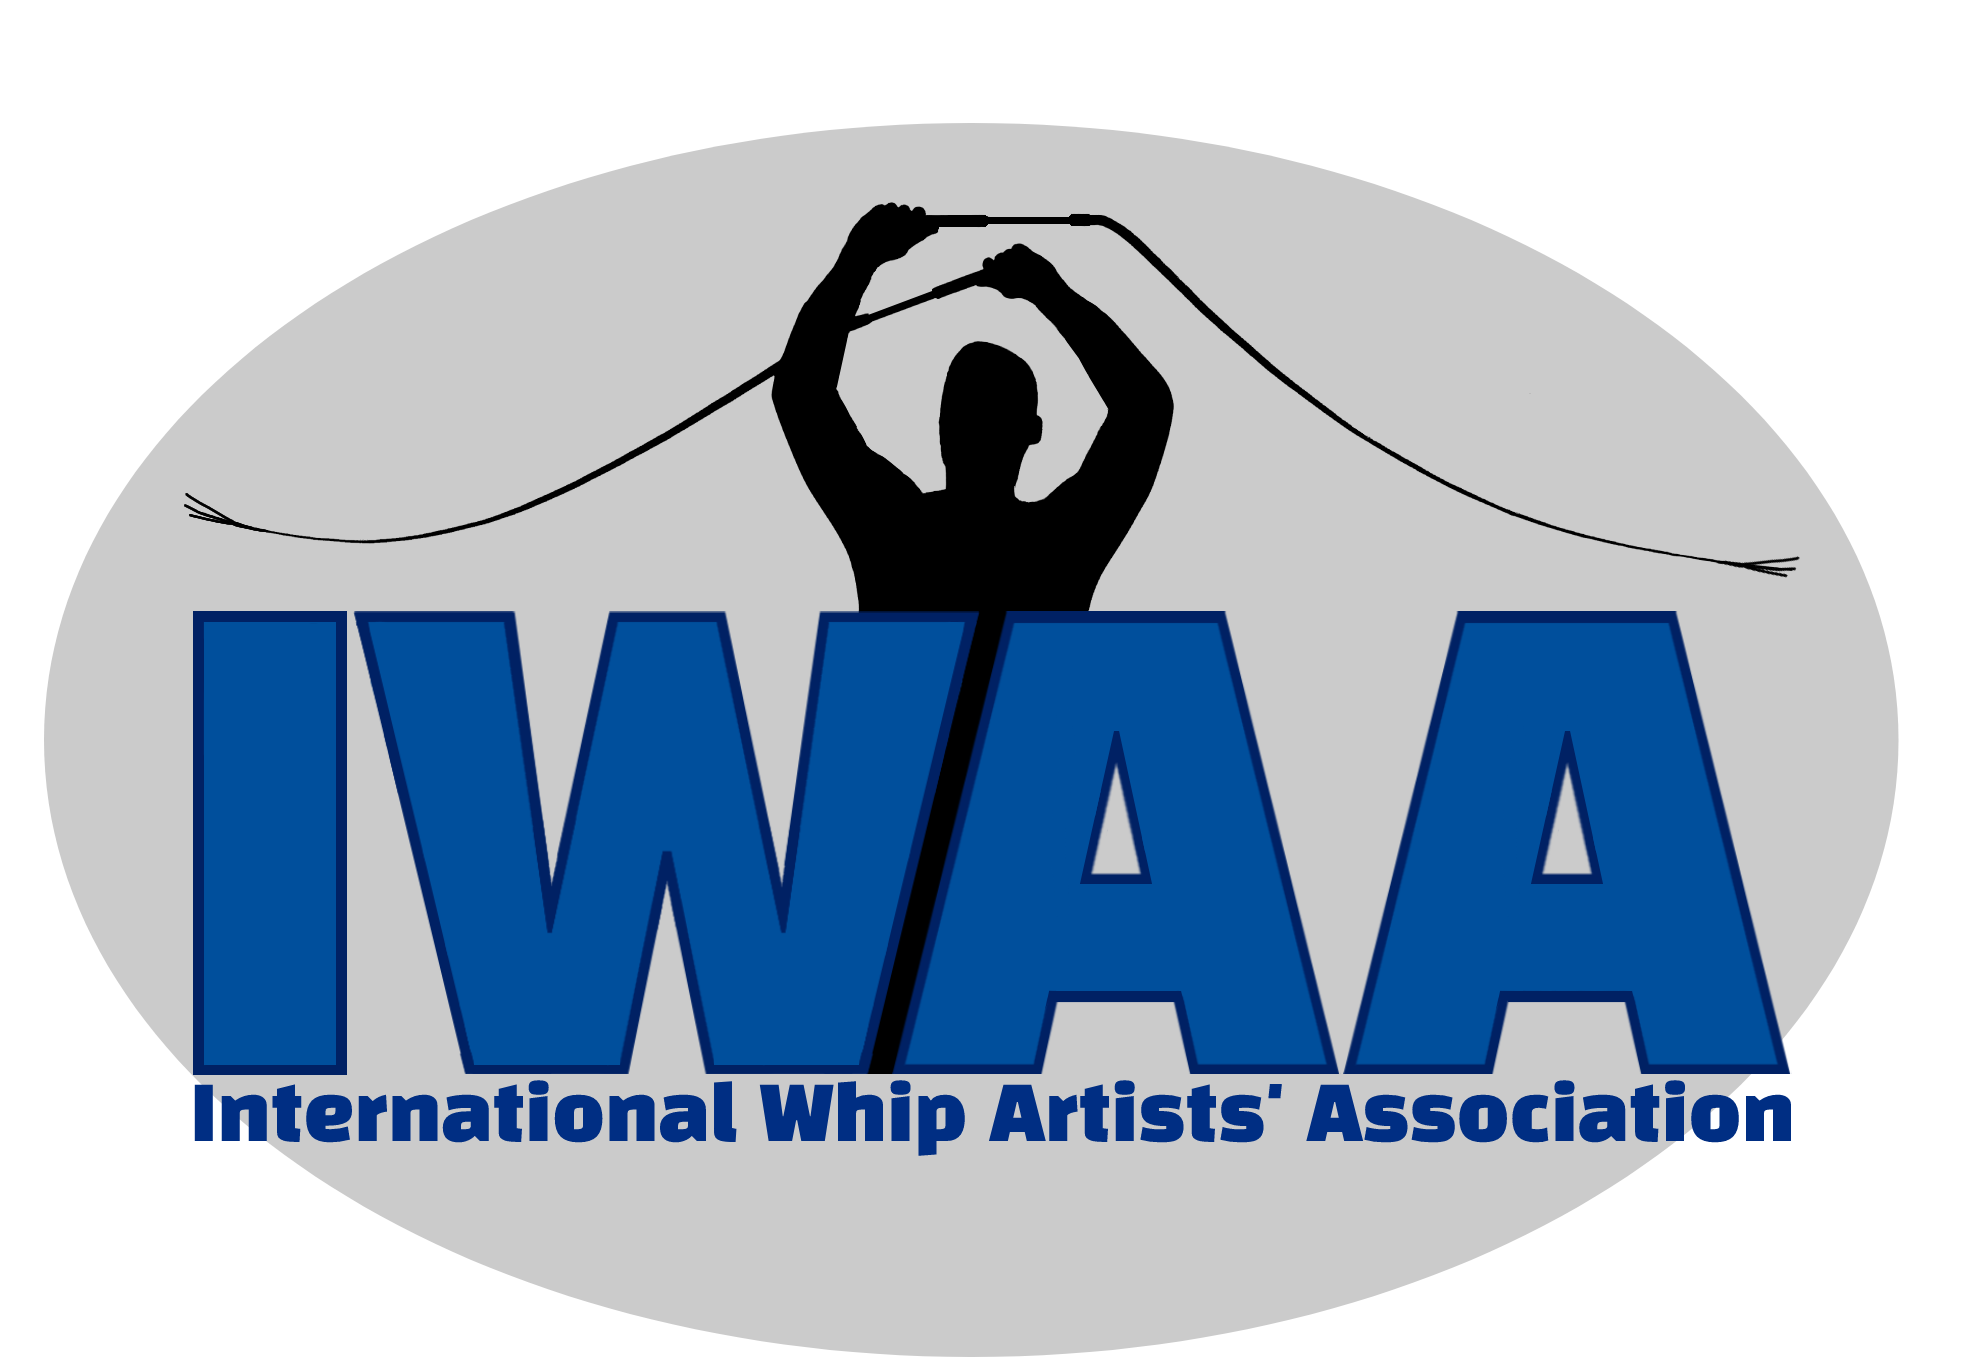 IWAA - International Whip Artists' Association